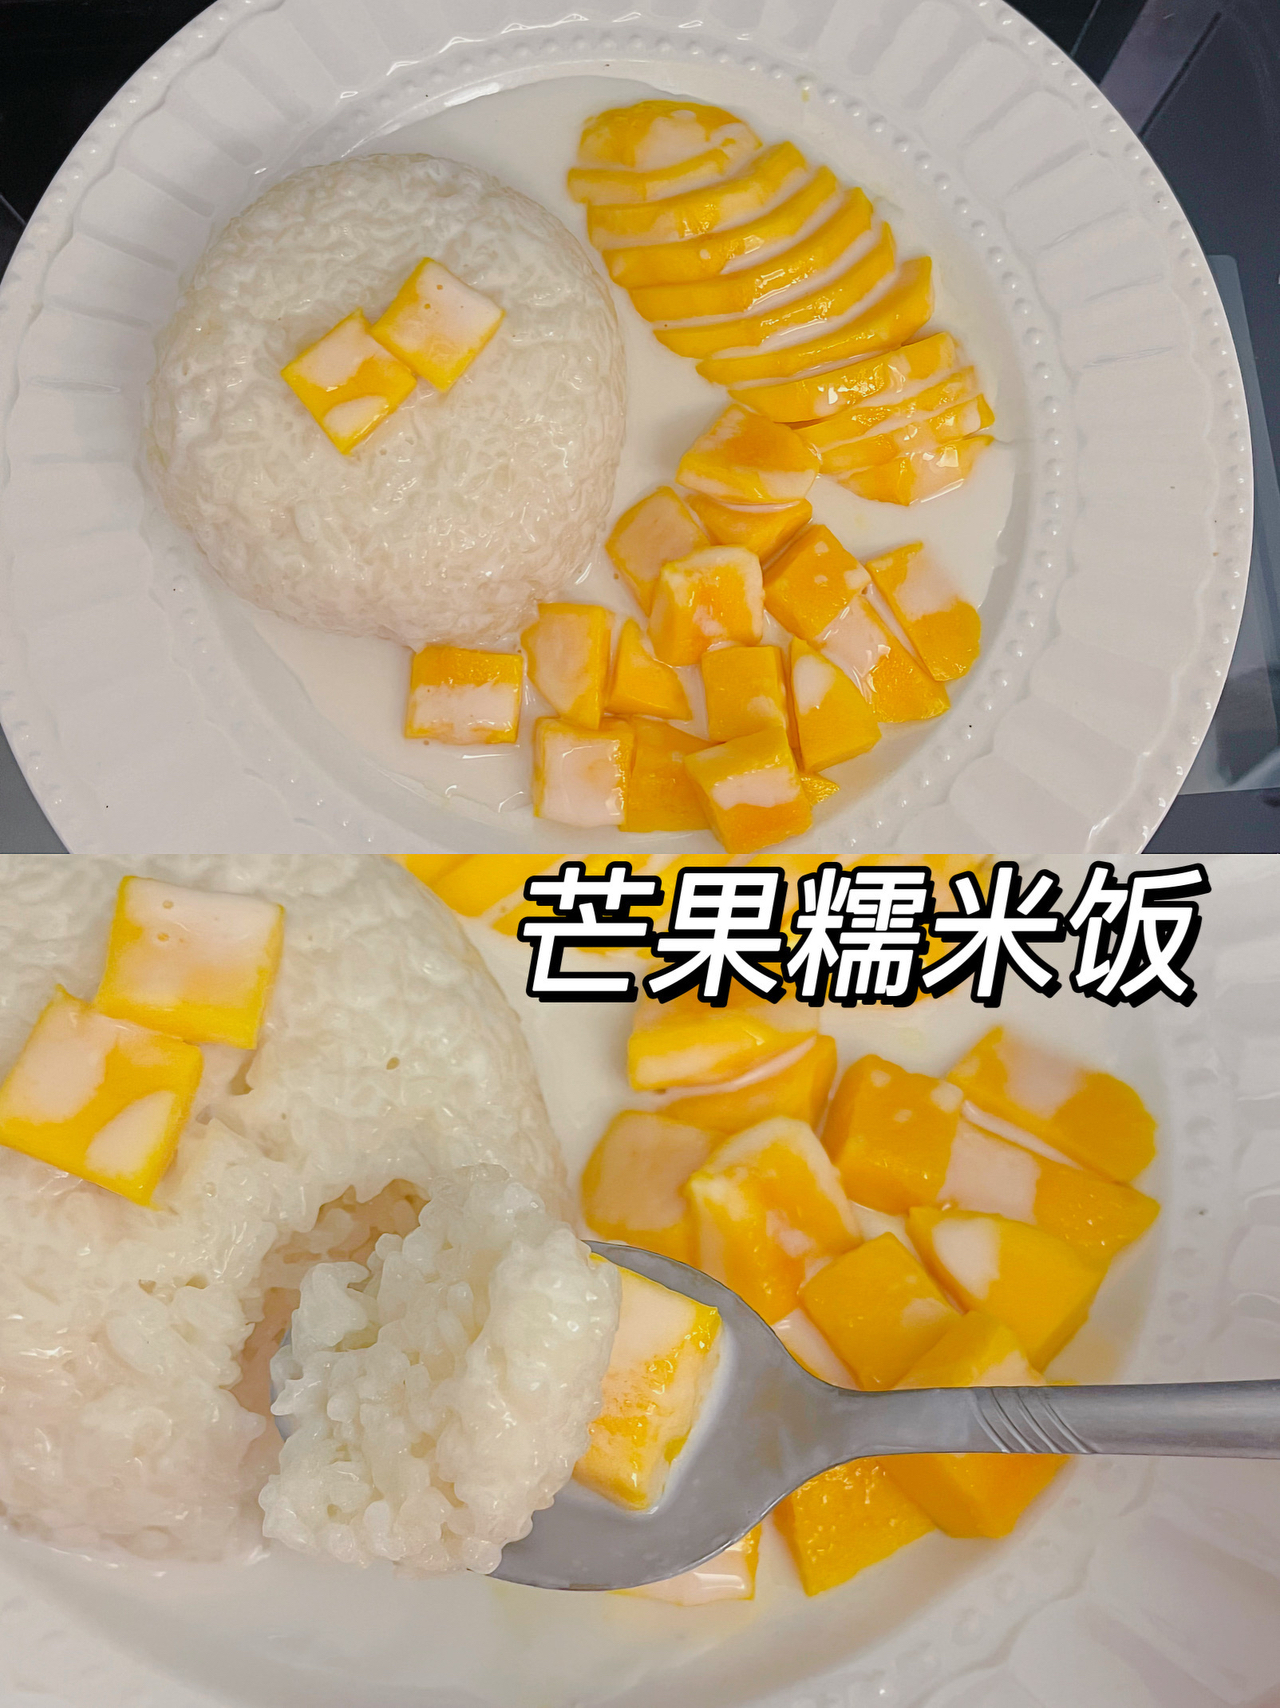 又到了吃芒果的季节啦✌️芒果糯米饭又香又甜超容易做‼️